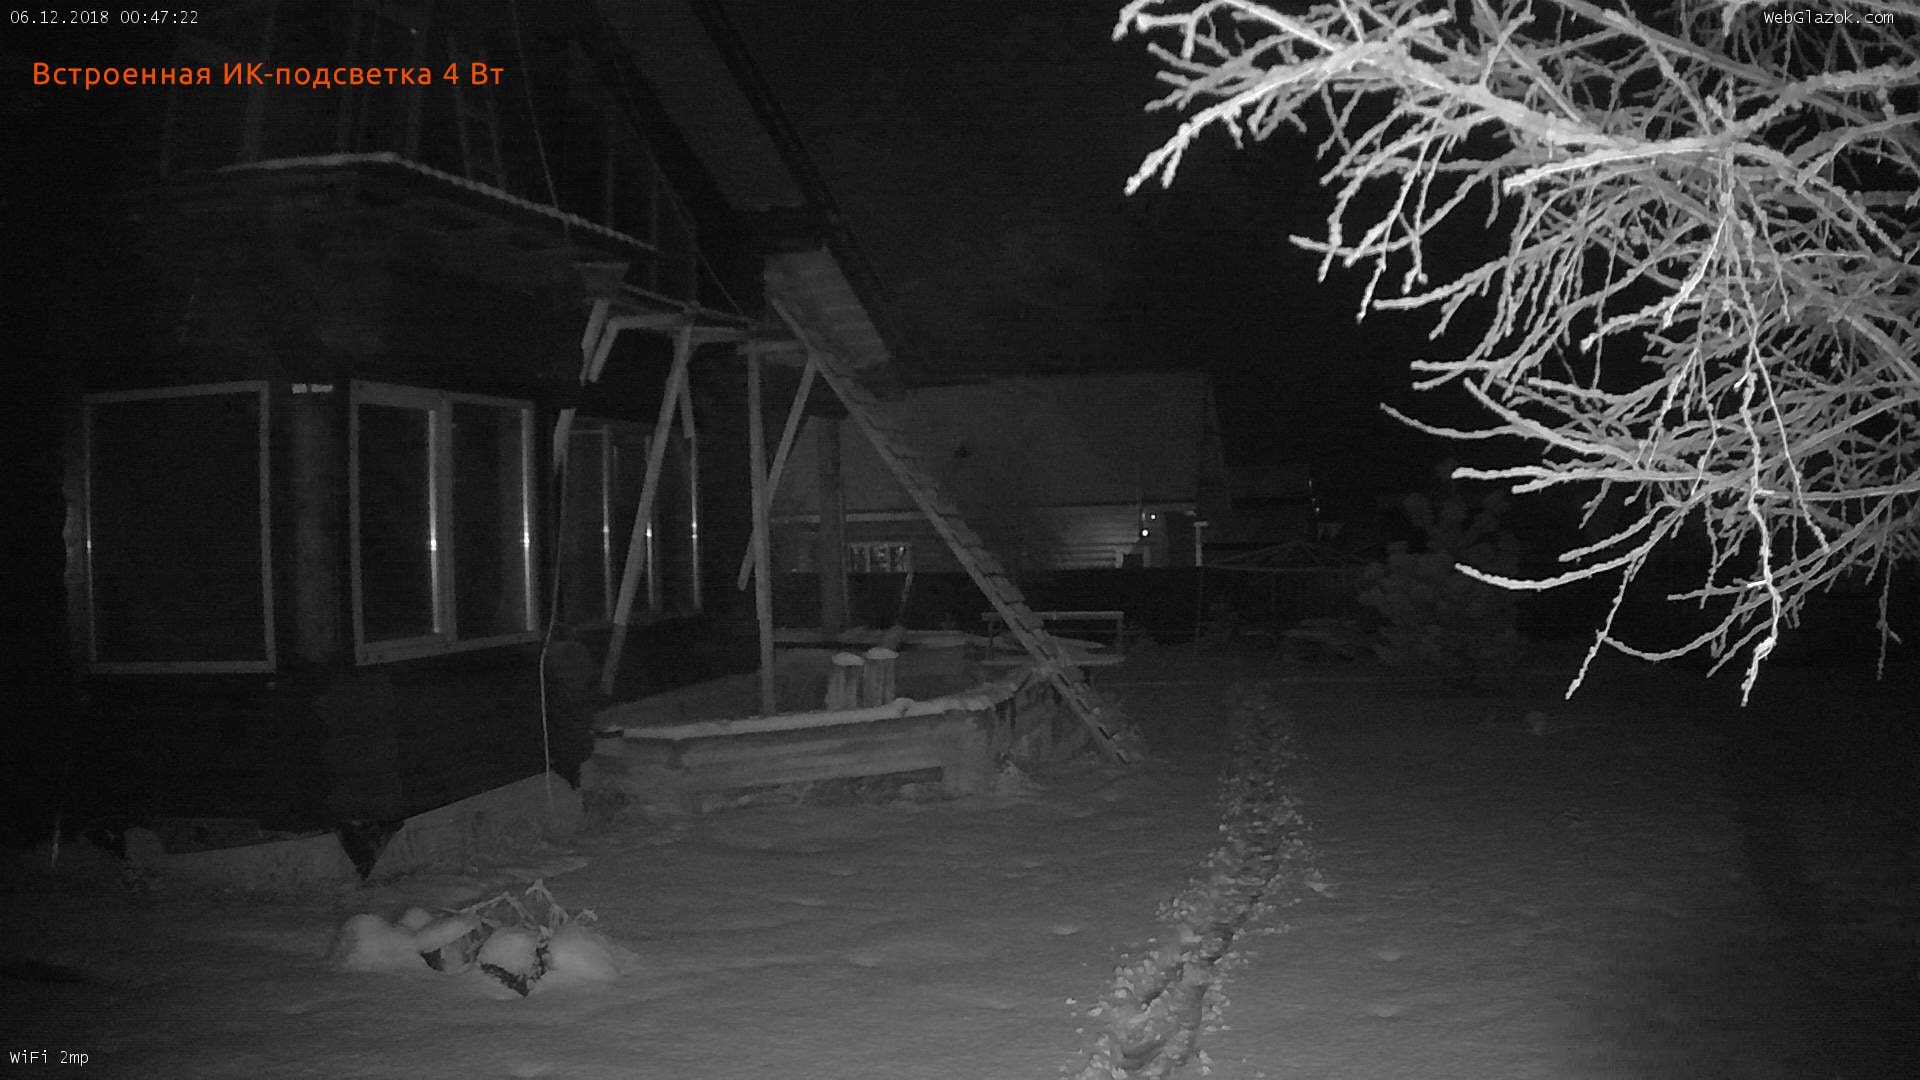 Пример снимка в полной темноте со встроенной в камеру ИК-подсветкой 4 Вт